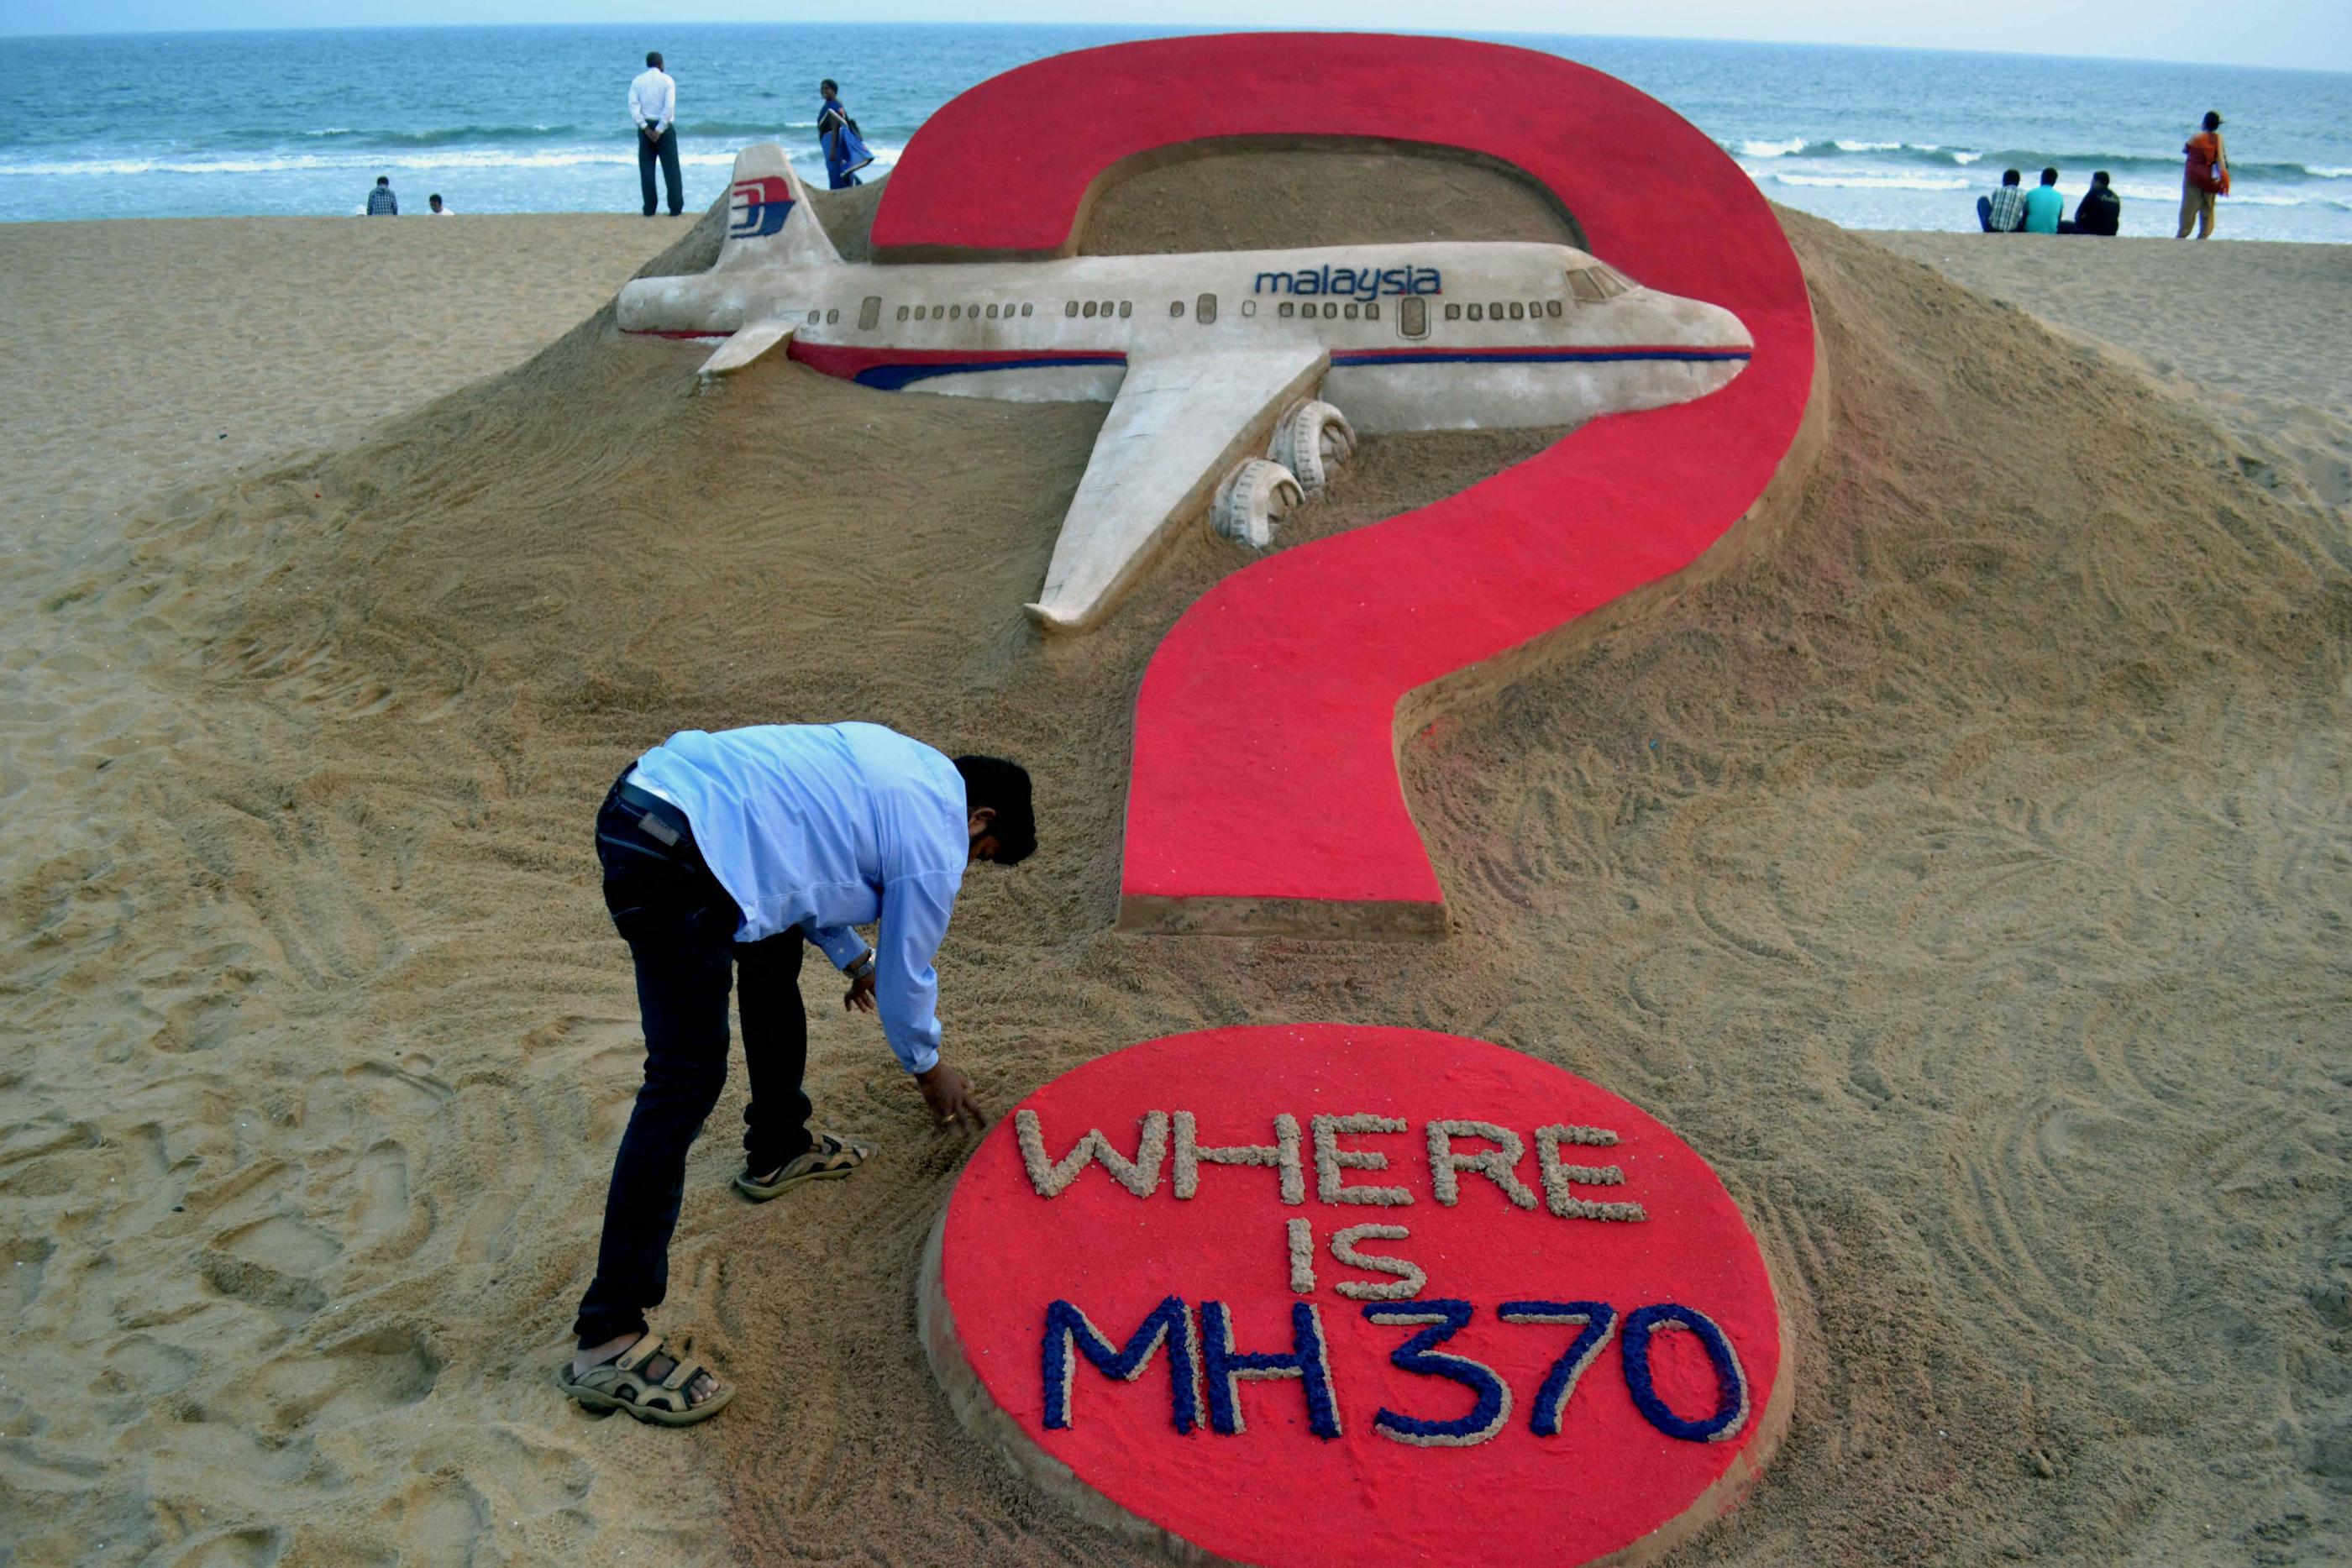 Le vol MH370 a disparu le 8 mars 2014, avec 239 personnes à son bord, alors qu'il devait relier Kuala Lumpur à Pékin. AFP/ J.K. Jagdev